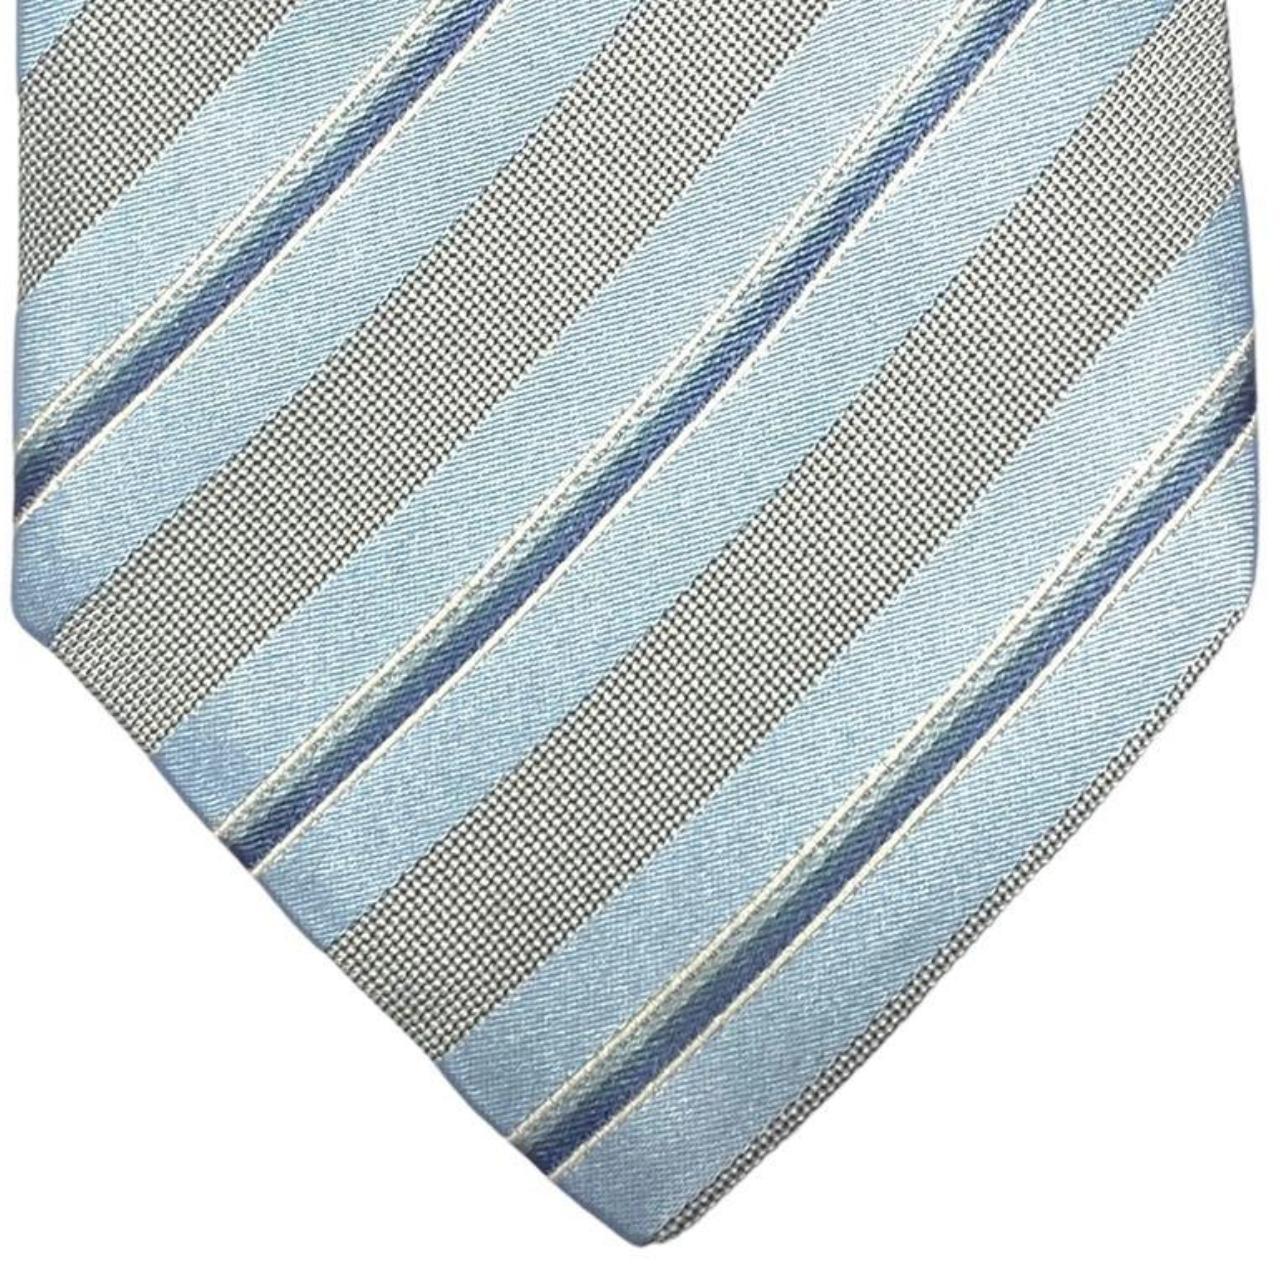 HUGO BOSS Blue & Grey Striped 100% Silk Tie Men's... - Depop